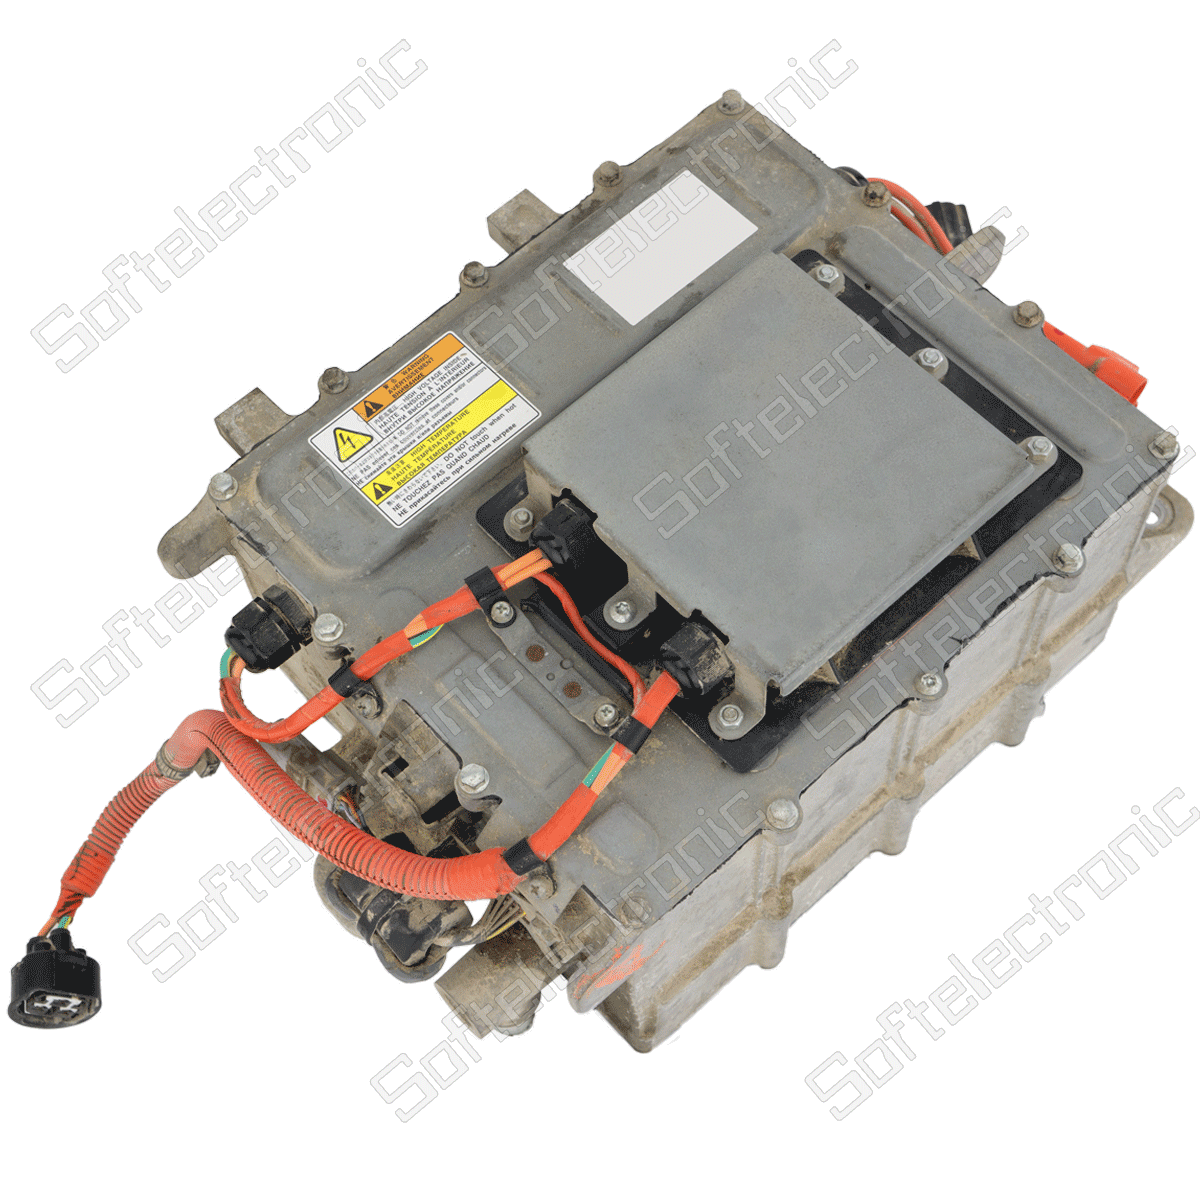 Repair of charging module for electric car Mitsubishi I-Miev